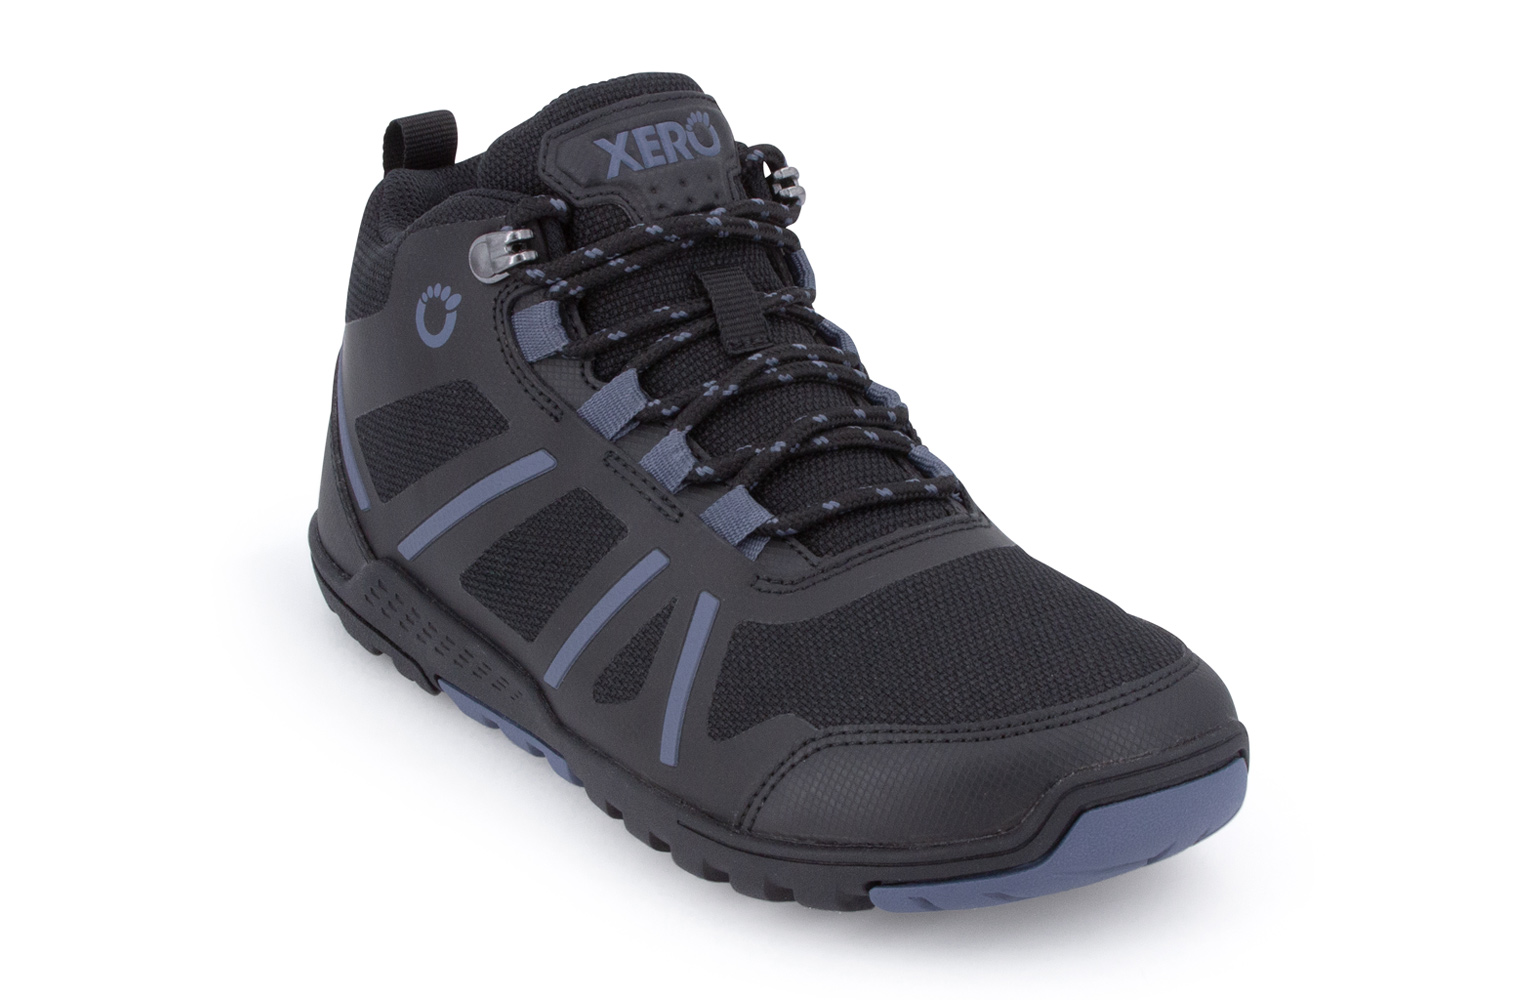 Xero DayLite Hiker Fusion Black meeste matkasaapad Kevad/sügis - HellyK - Kvaliteetsed lasteriided, villariided, barefoot jalatsid